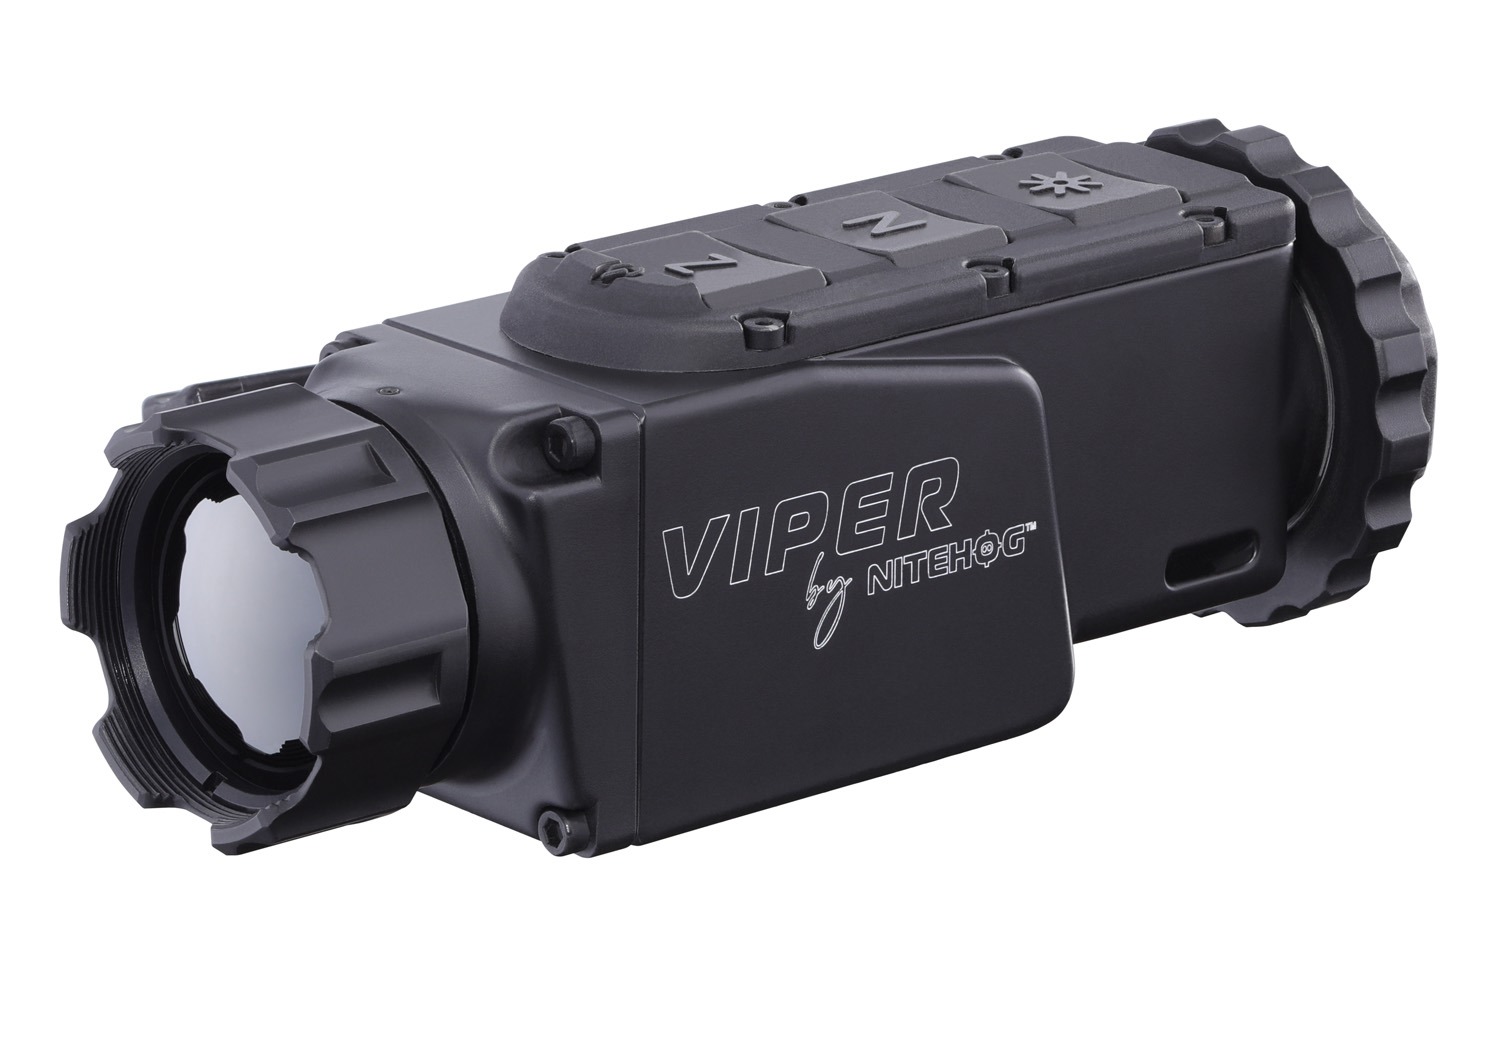 Nitehog Viper hőkamera előtét, 12 mikronos, csak 280g